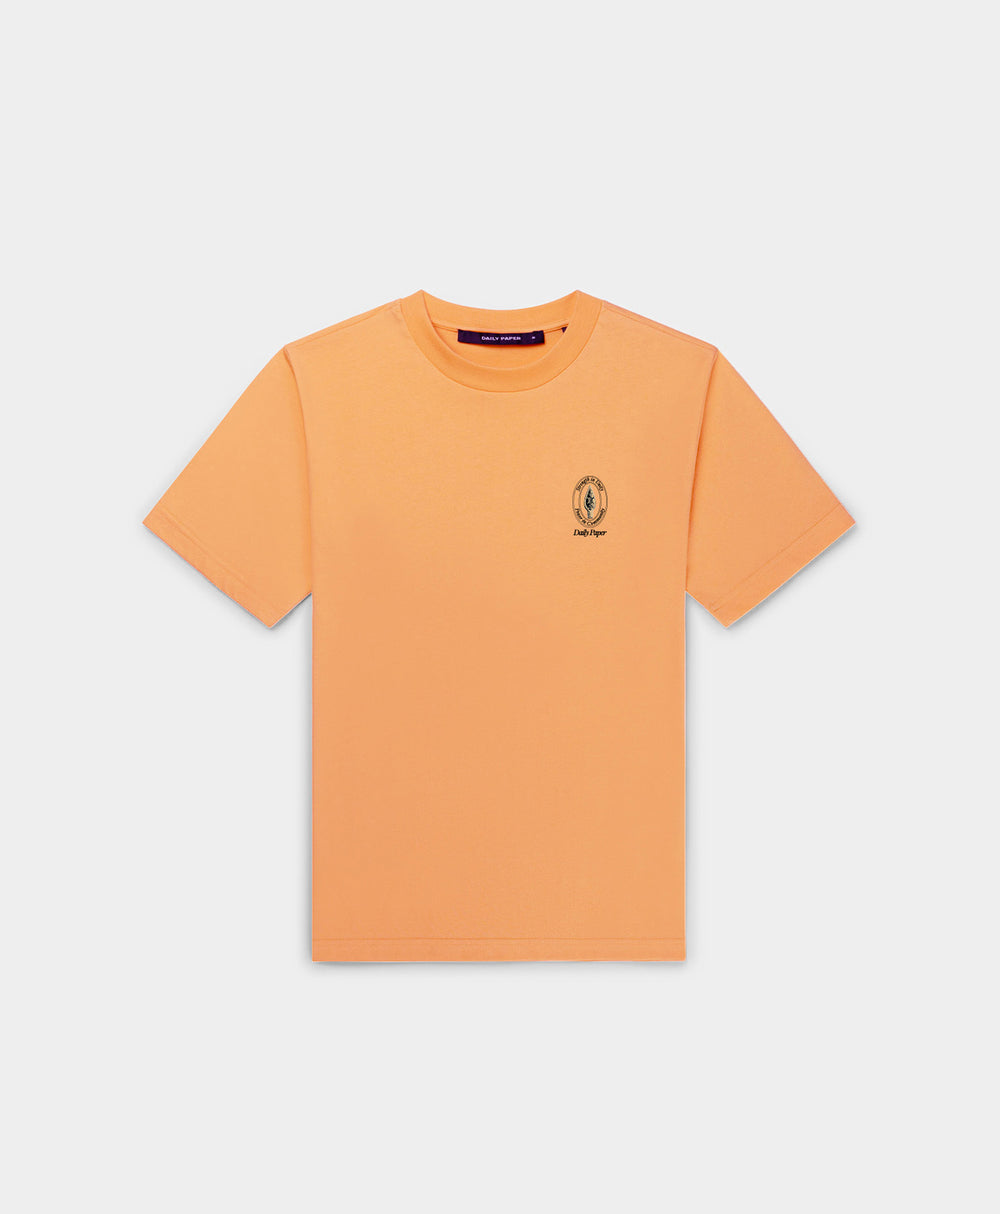 DP - Tangerine Orange Raisa T-Shirt - Packshot - Front